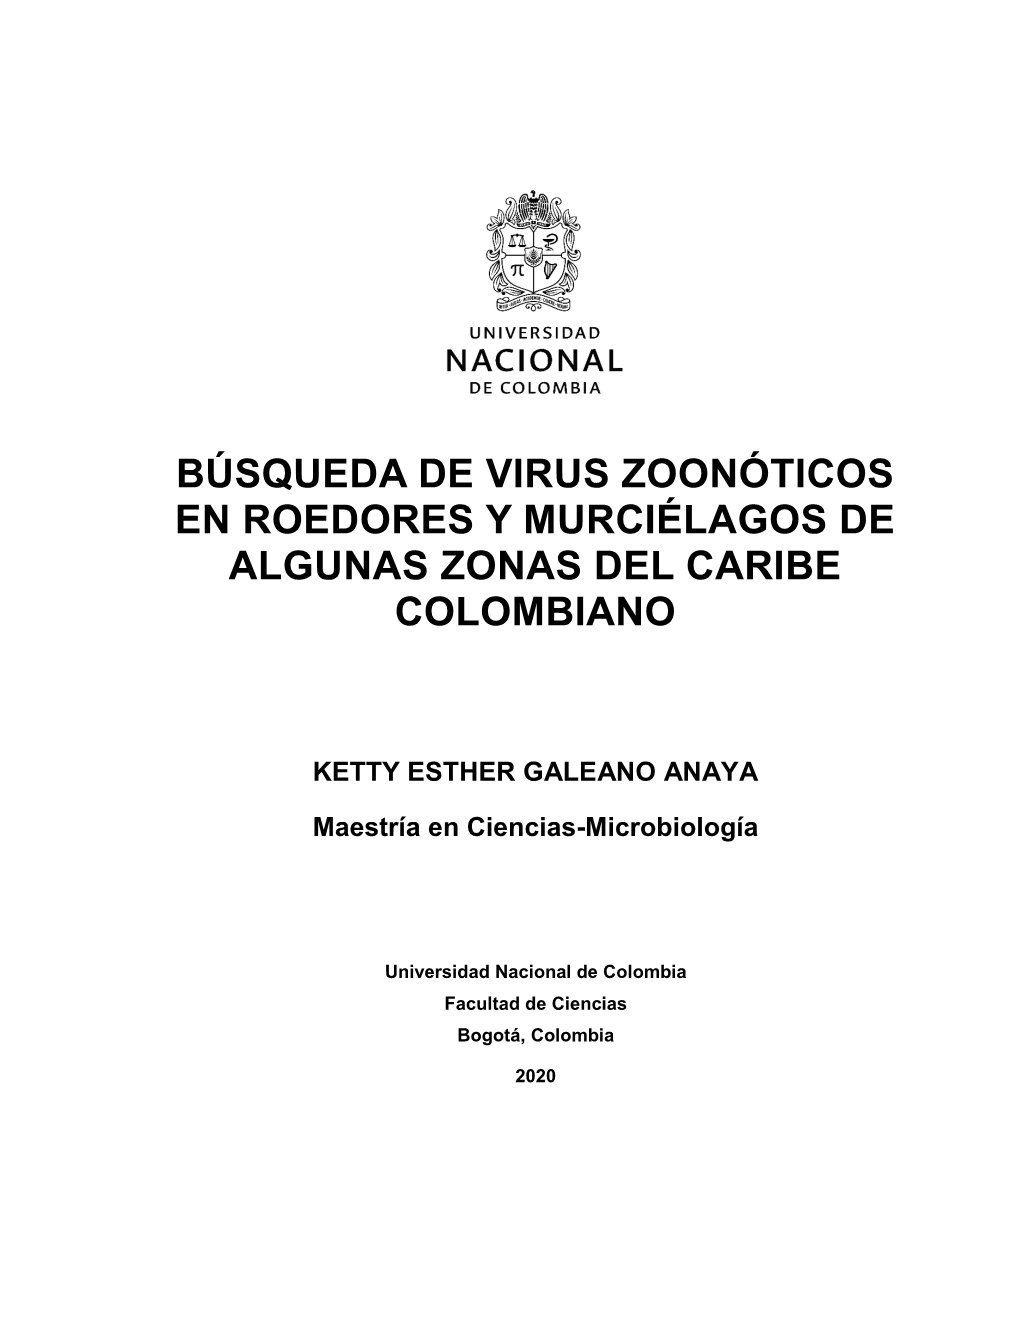 Búsqueda De Virus Zoonóticos En Roedores Y Murciélagos De Algunas Zonas Del Caribe Colombiano